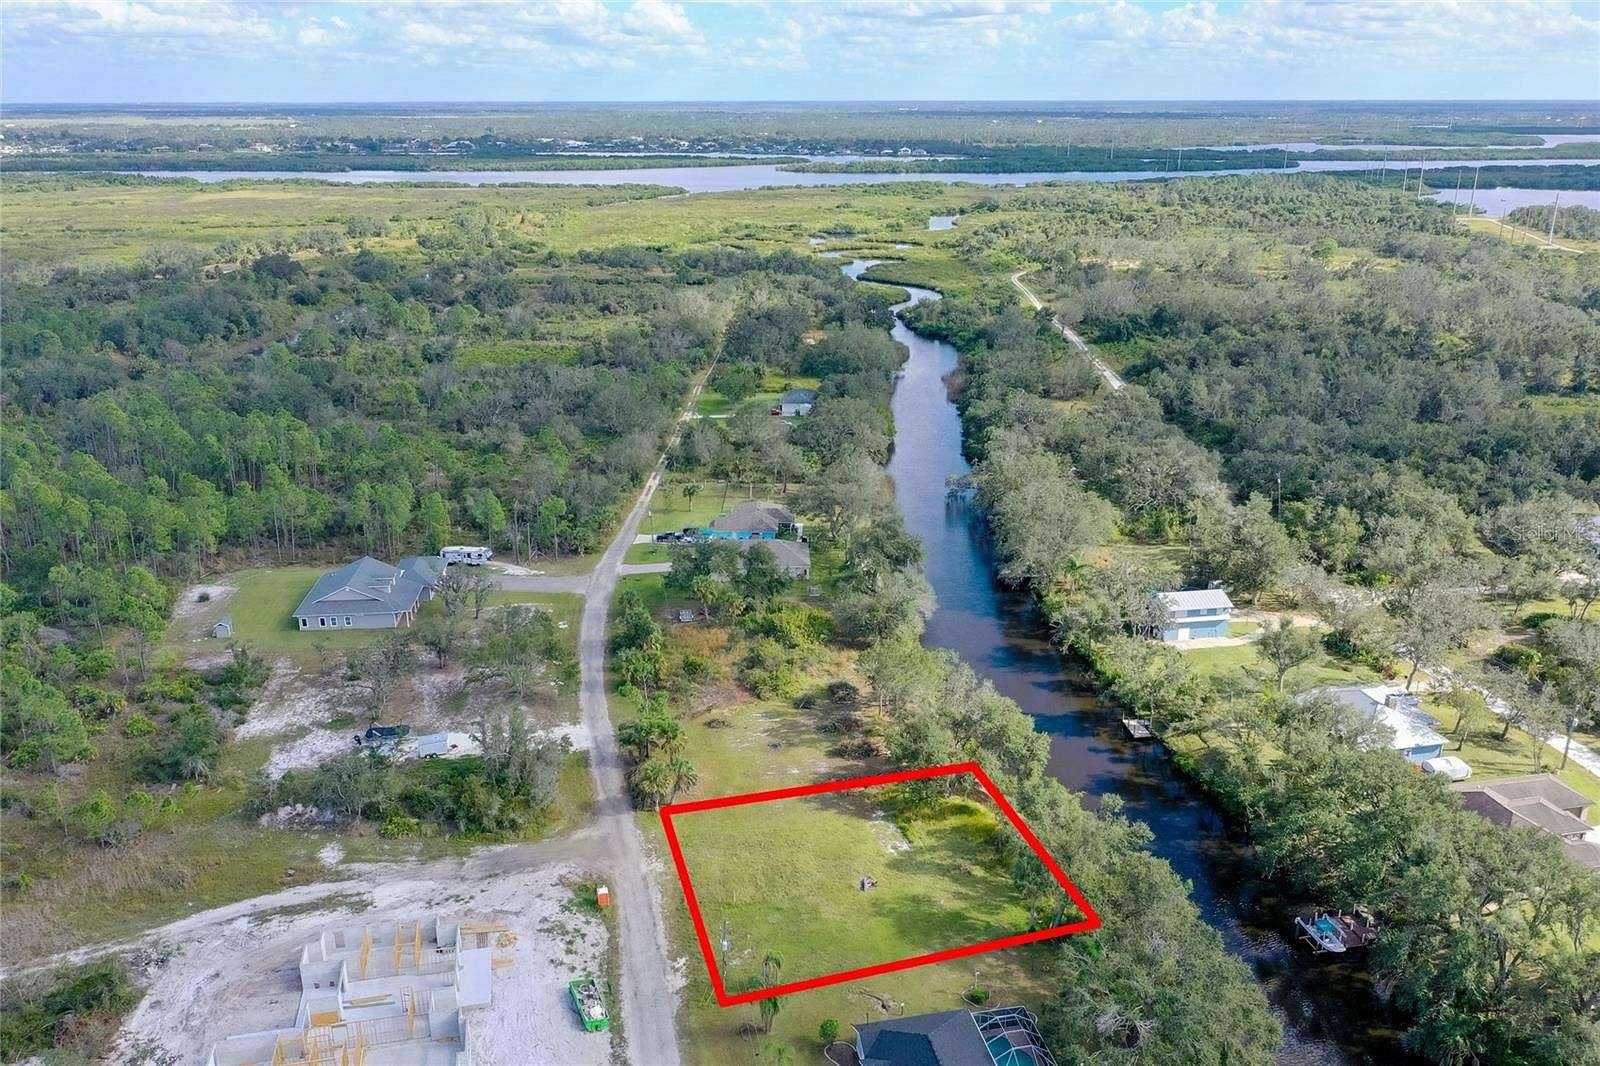 0.34 Acres of Land for Sale in Punta Gorda, Florida